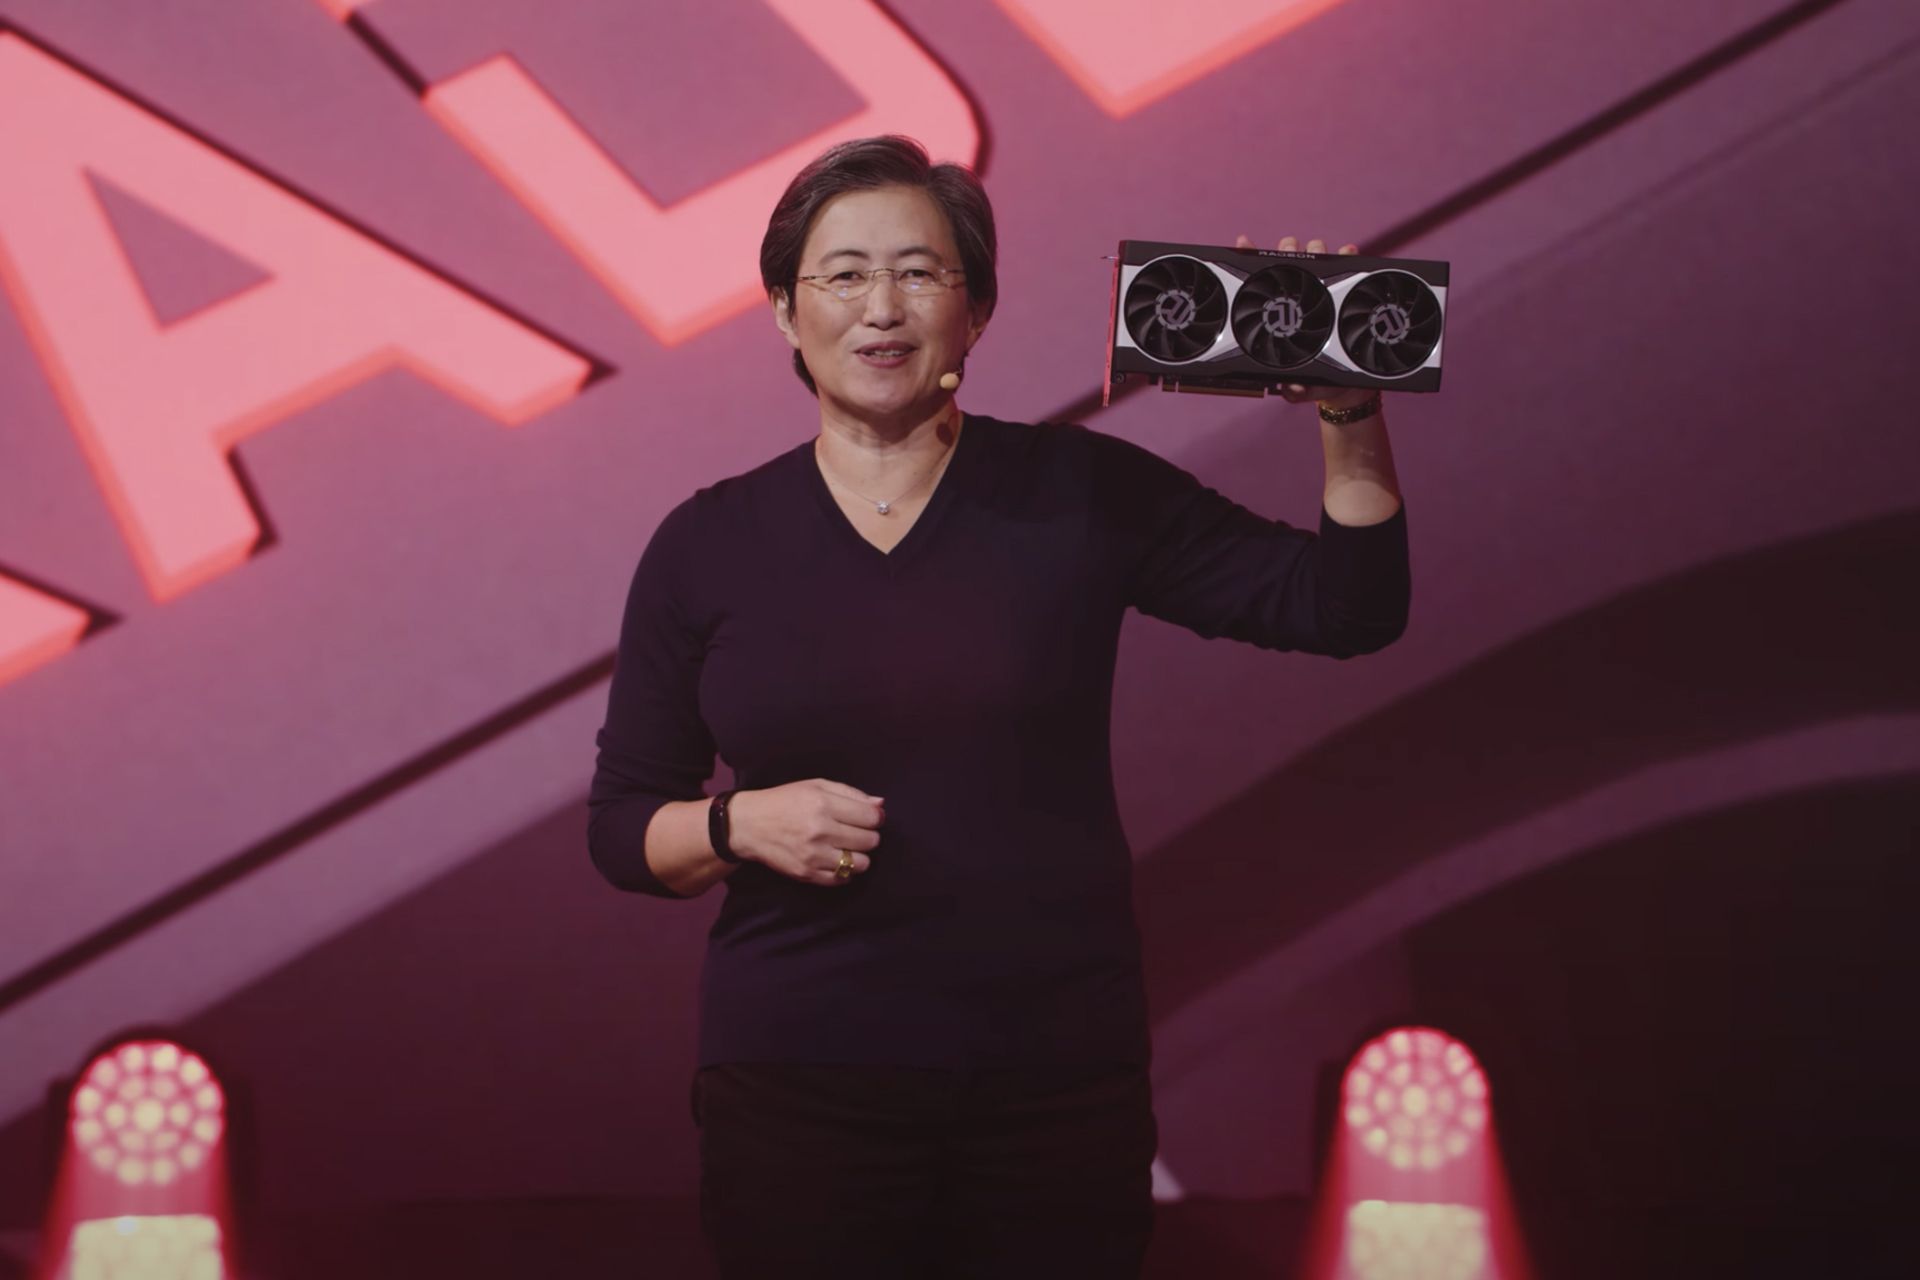 دکتر لیزا سو مدیرعامل ای ام دی / AMD با کارت گرافیک بیگ نوی / Big Navi در دست